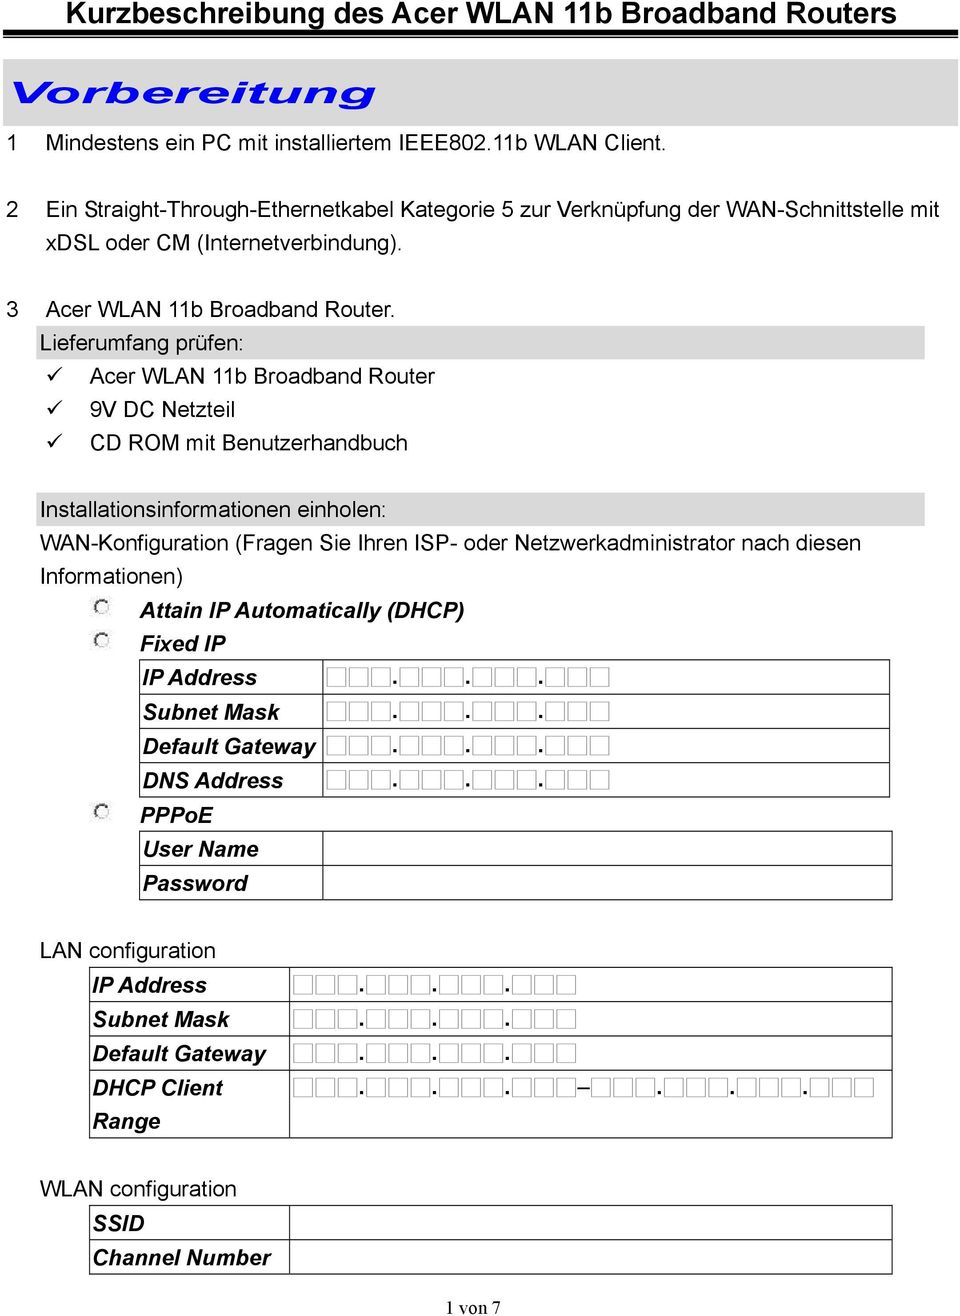 Lieferumfang prüfen: Acer WLAN 11b Broadband Router 9V DC Netzteil CD ROM mit Benutzerhandbuch Installationsinformationen einholen: WAN-Konfiguration (Fragen Sie Ihren ISP- oder